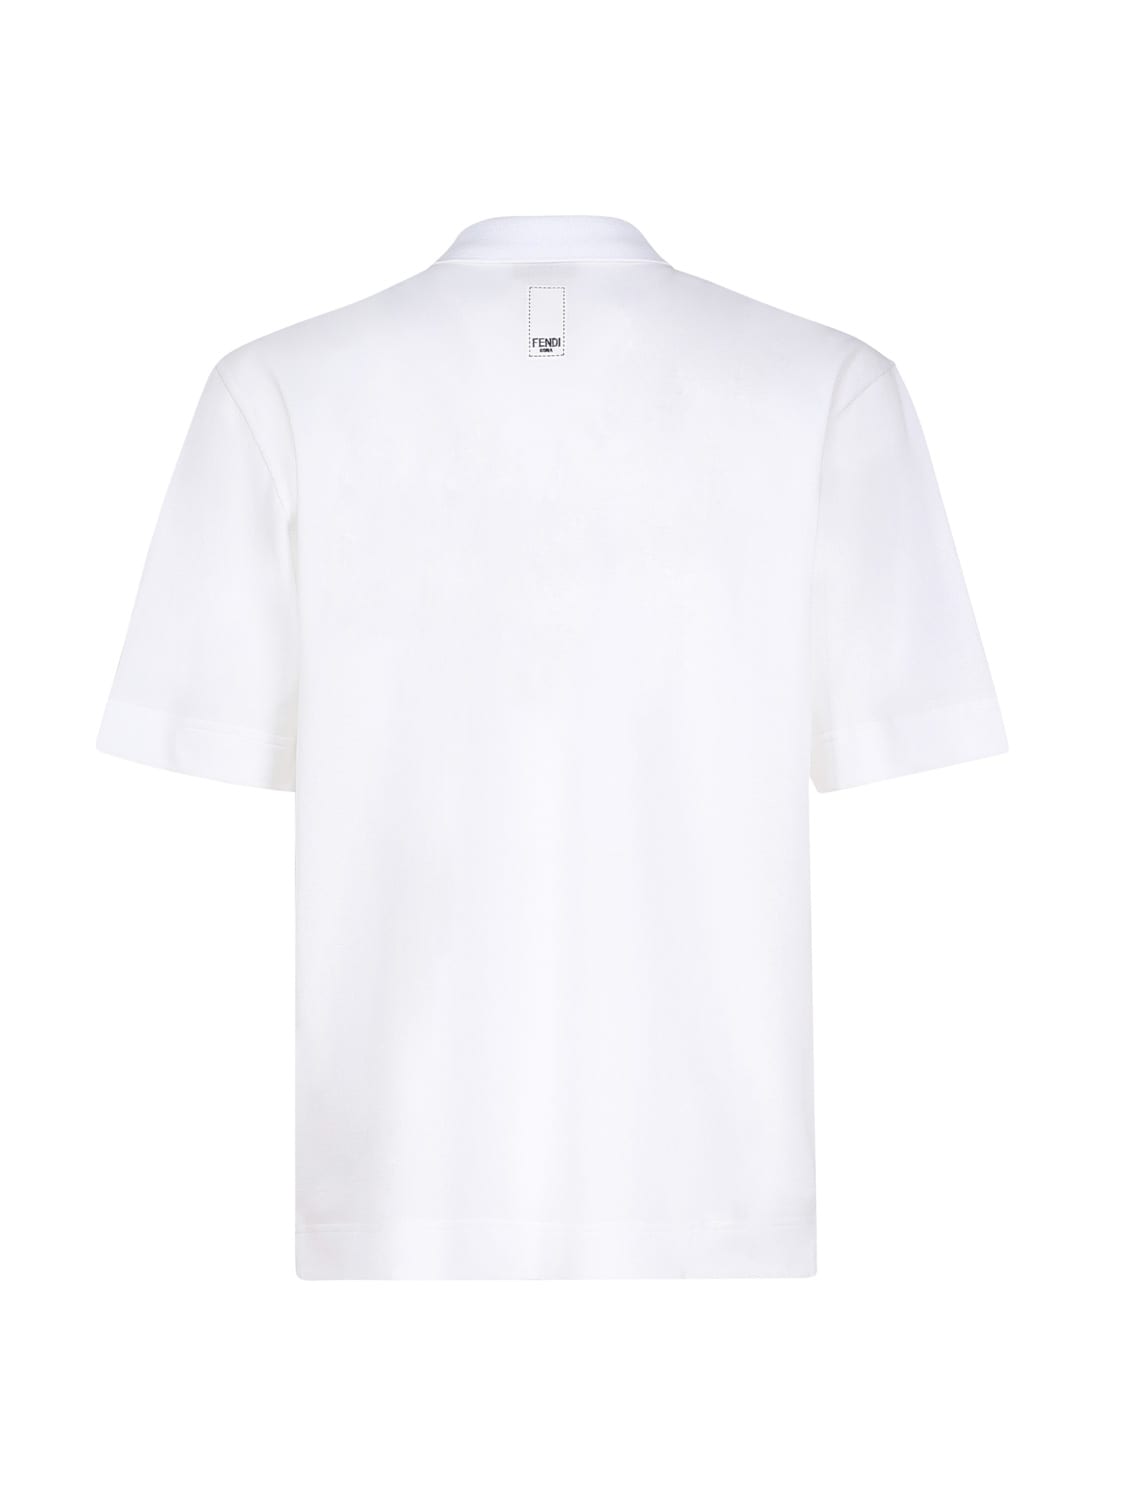 Shop Fendi Cotton Polo Shirt